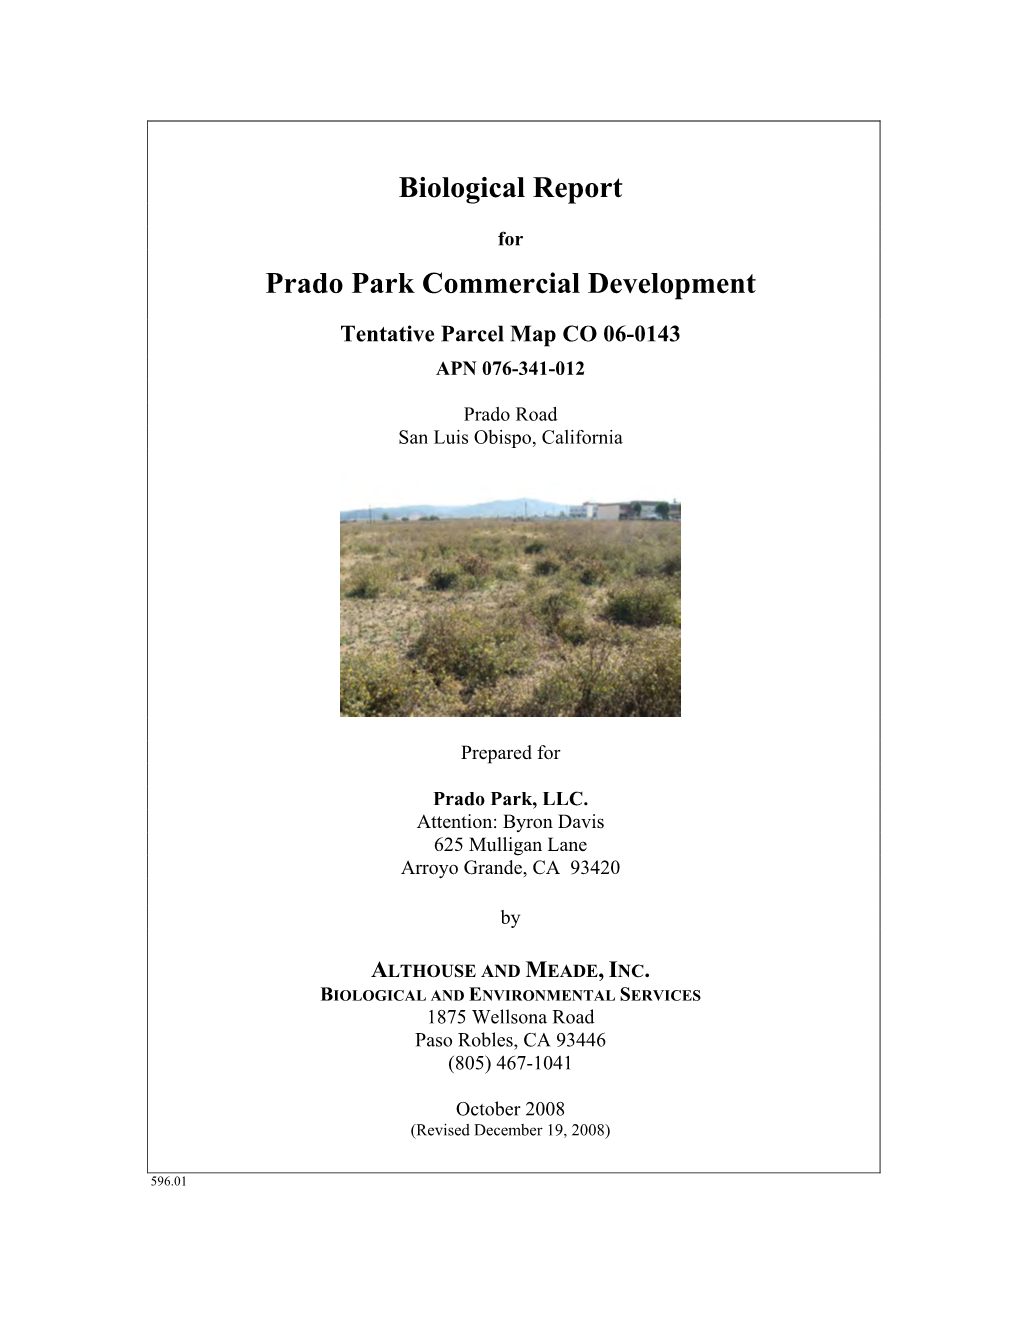 Biological Assessment for Prado Park